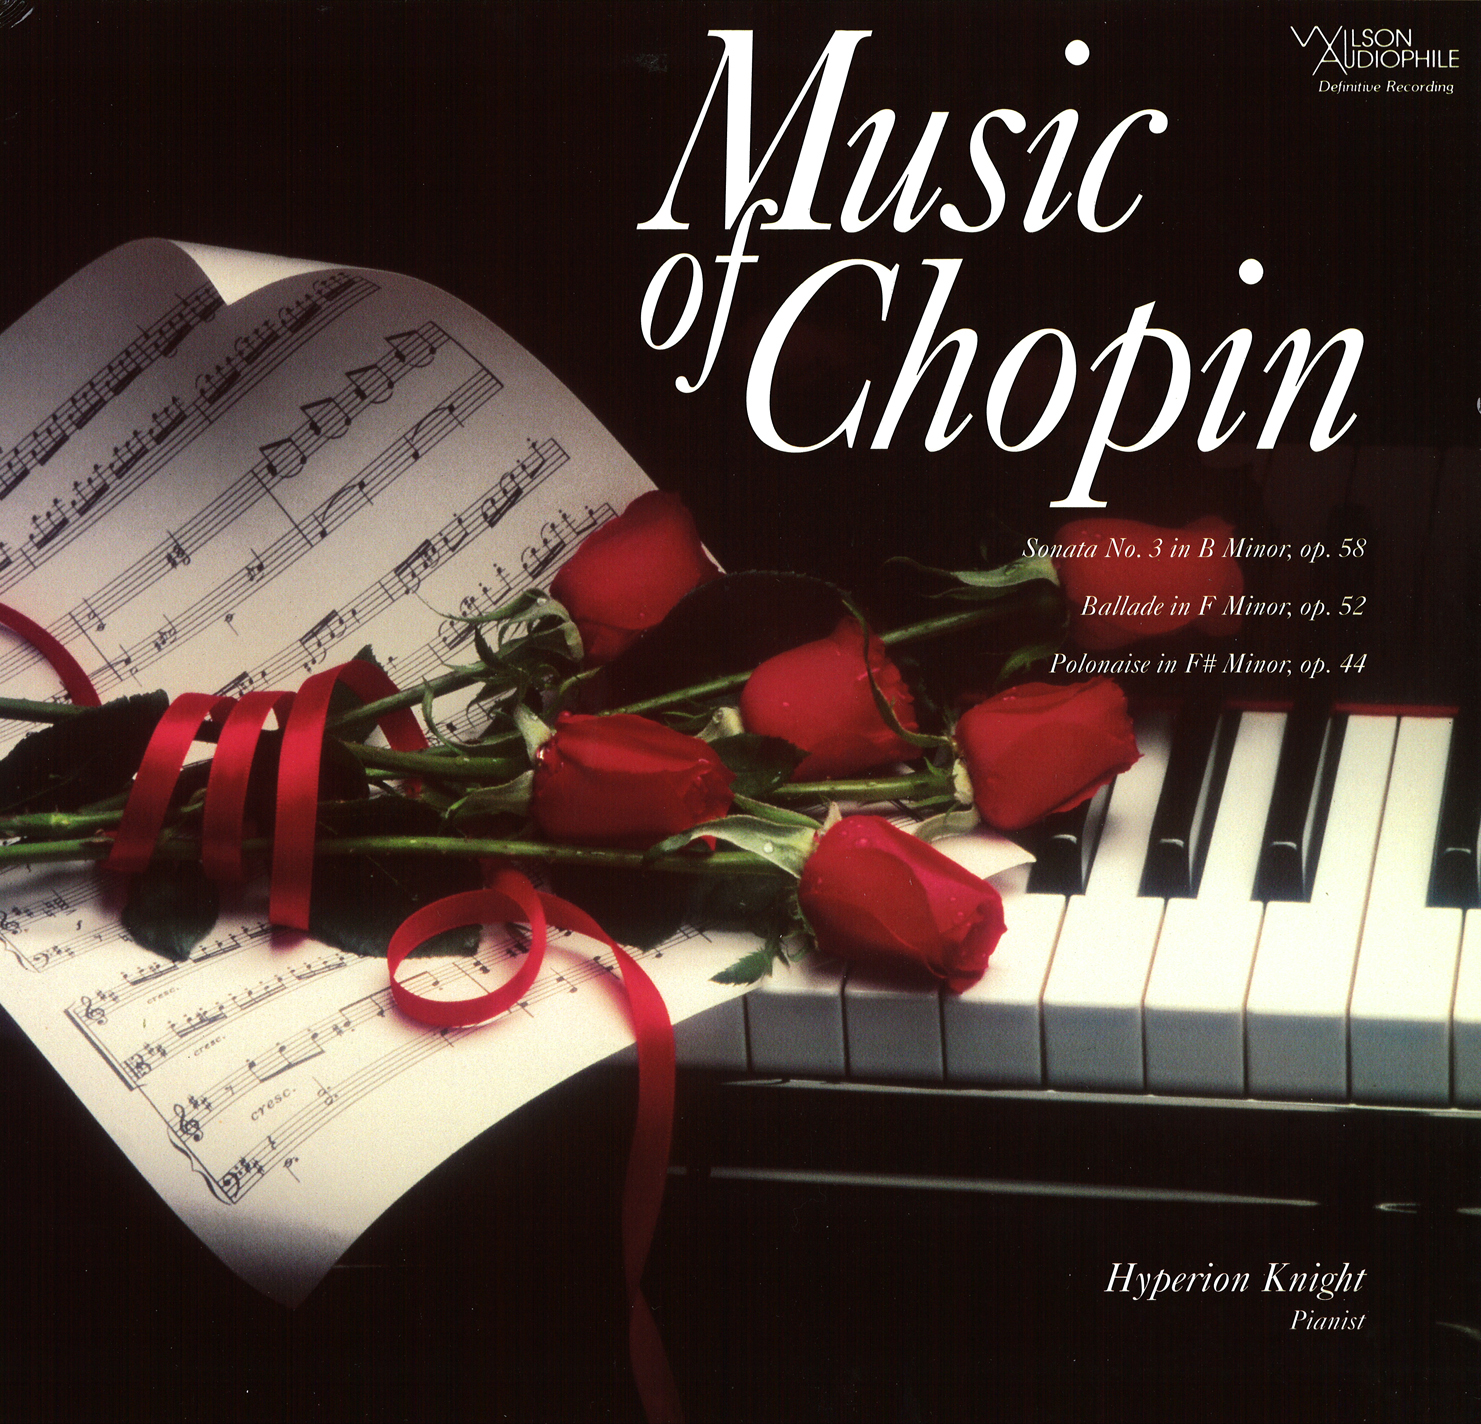 Шопен. Музыка Шопена. Ballade no. 4 in f Minor, op. 52. By Frédéric Chopin. Шопен слушать музыку.